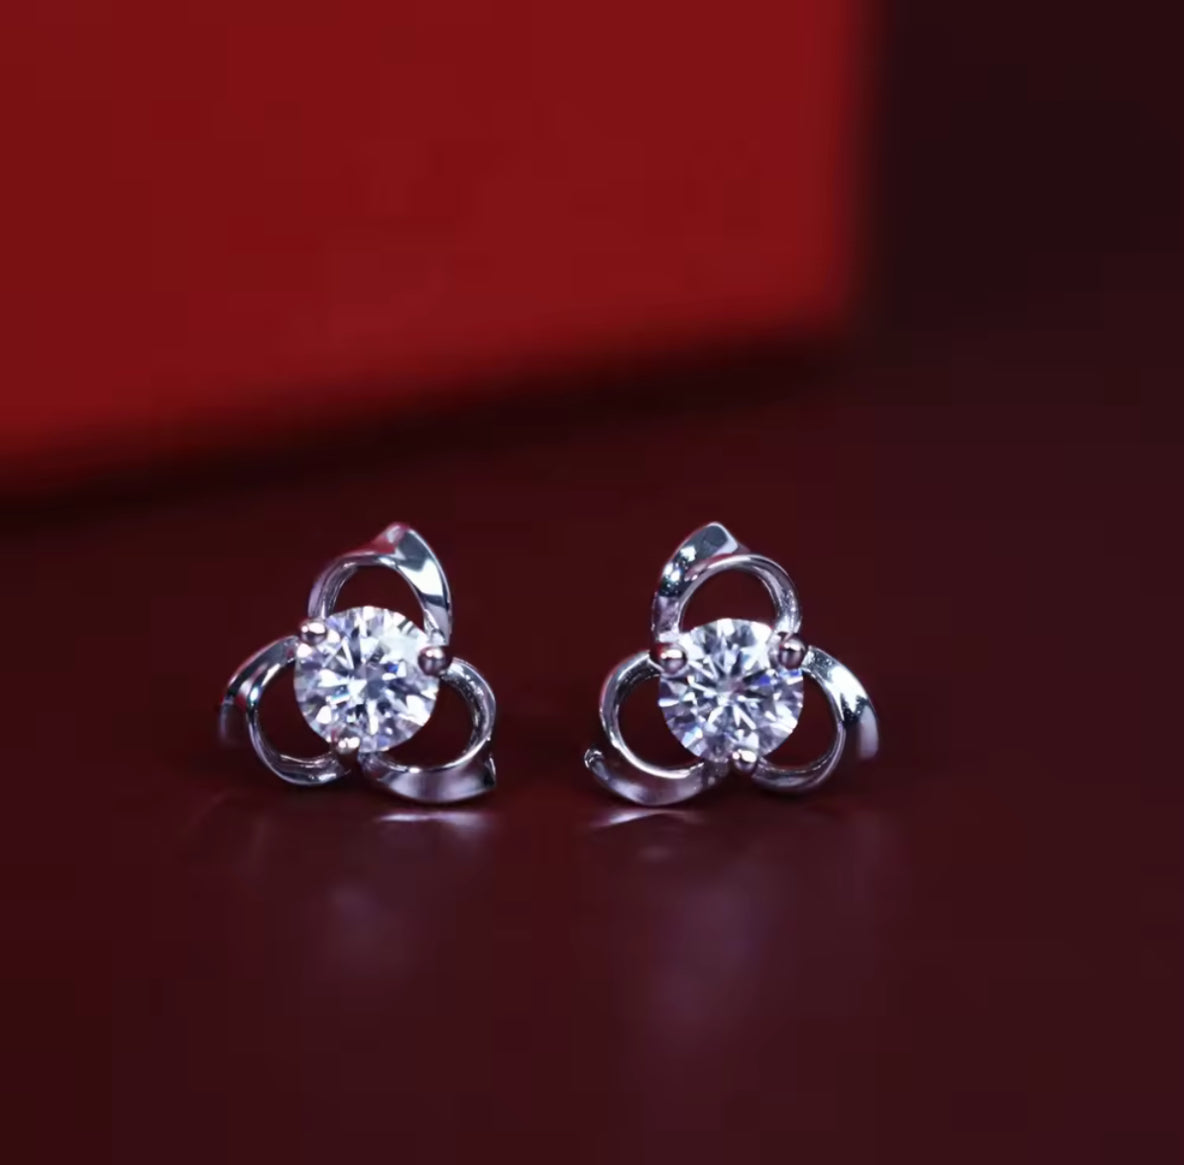 Trefoil motif earrings